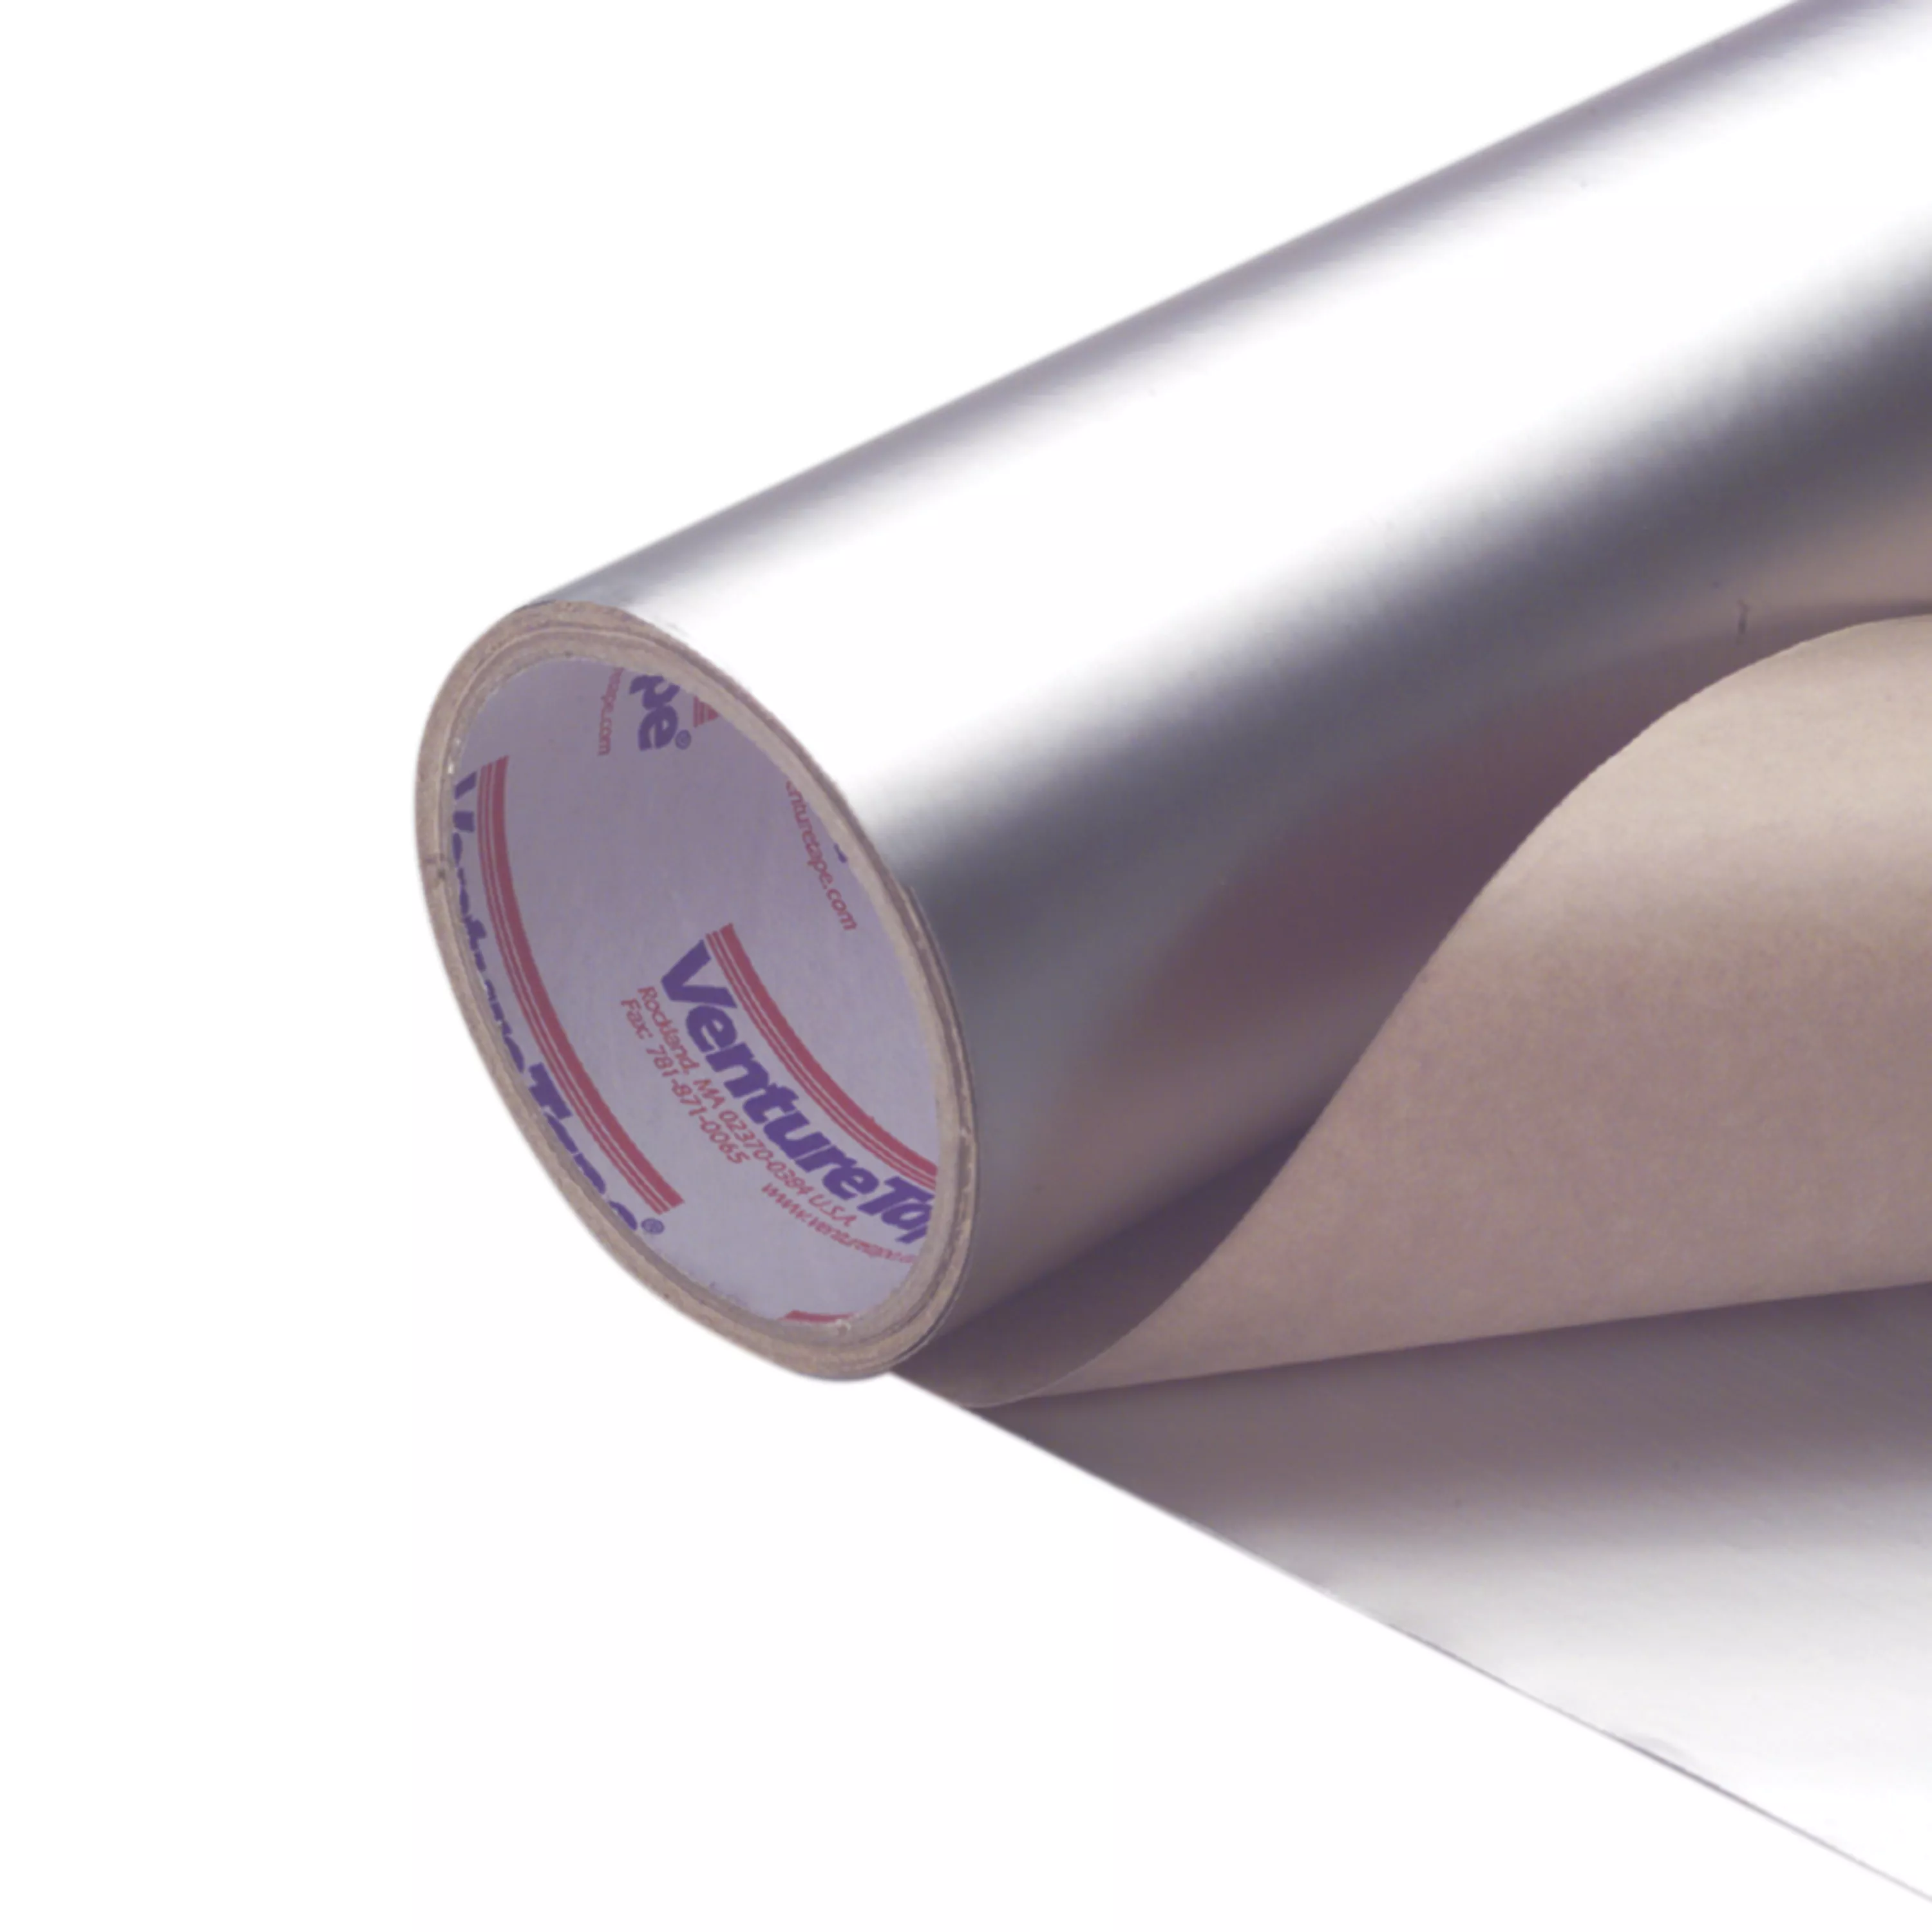 3M™ VentureClad™ Insulation Jacketing Tape 1577CW-WM, White, 4 in x 50
yd, 4 Rolls/Case